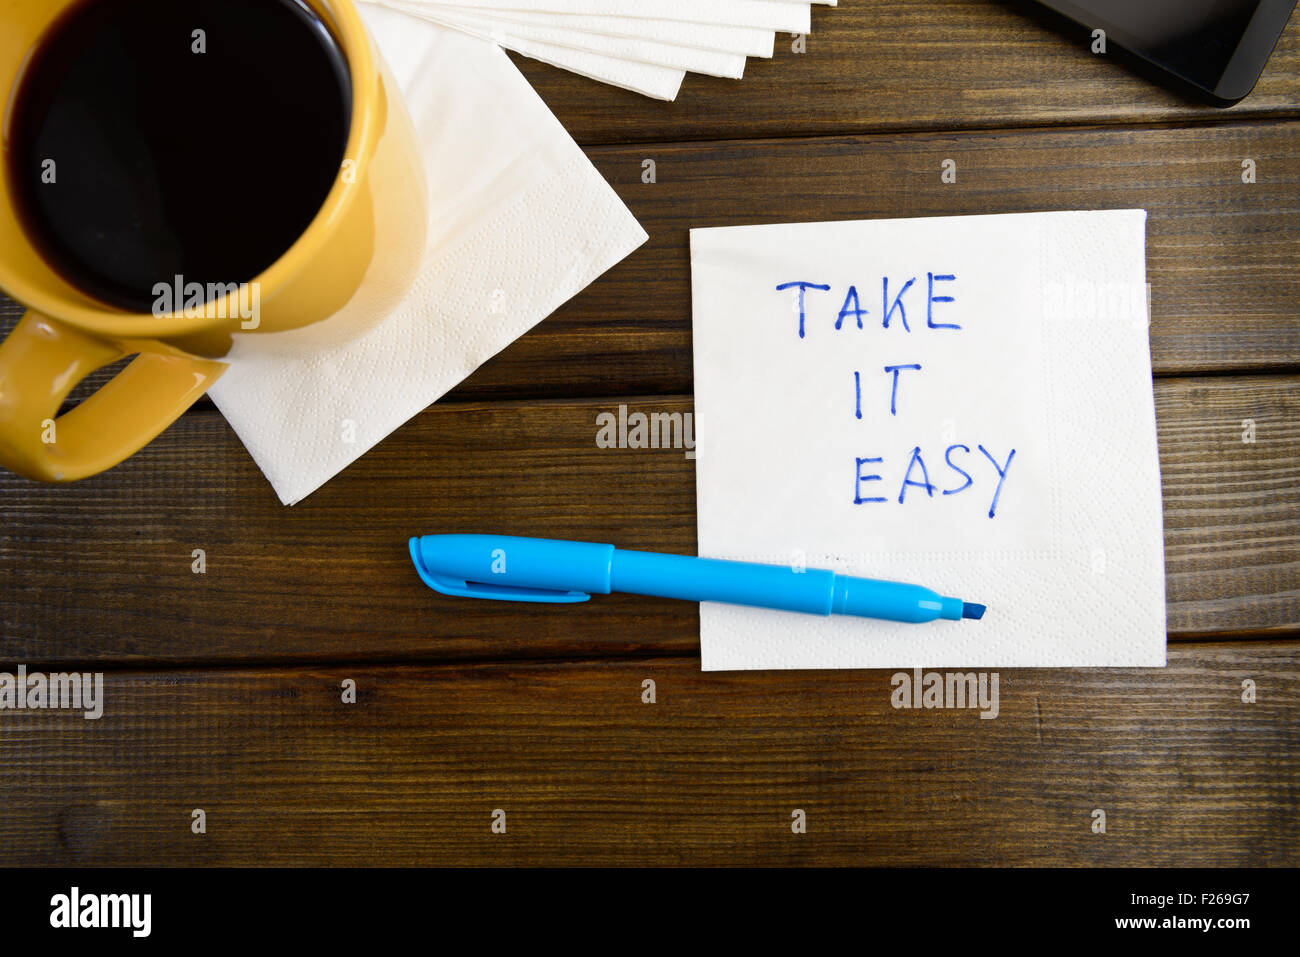 Take it easy - scrittura su un tovagliolo con una tazza di caffè Foto Stock